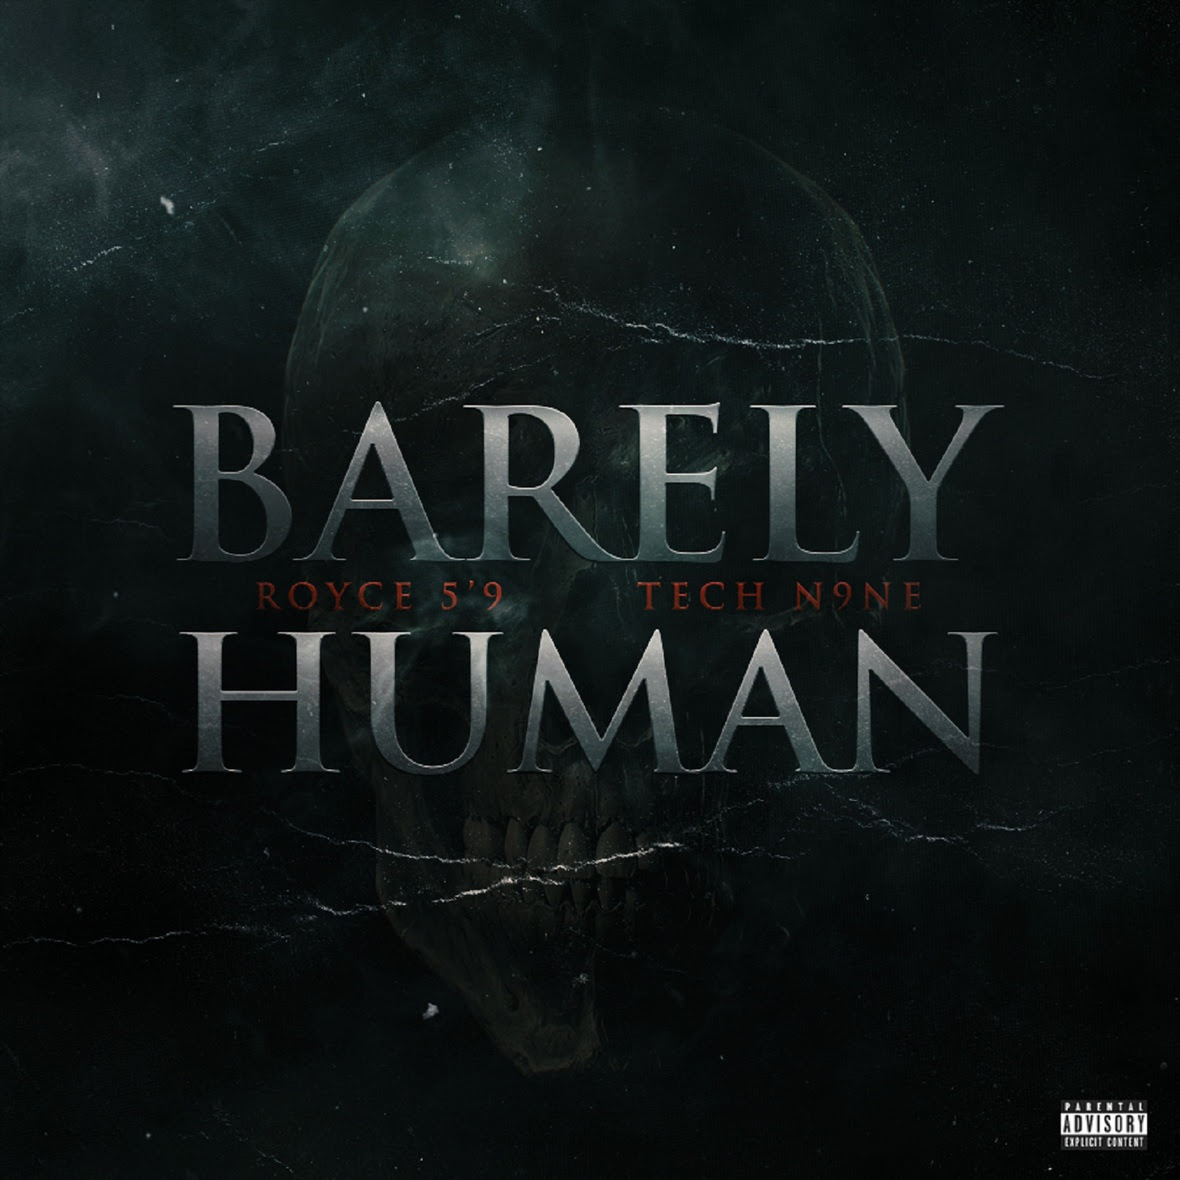 New Music: Royce Da 5’9 – “Barely Human” Feat. Tech N9ne [LISTEN]